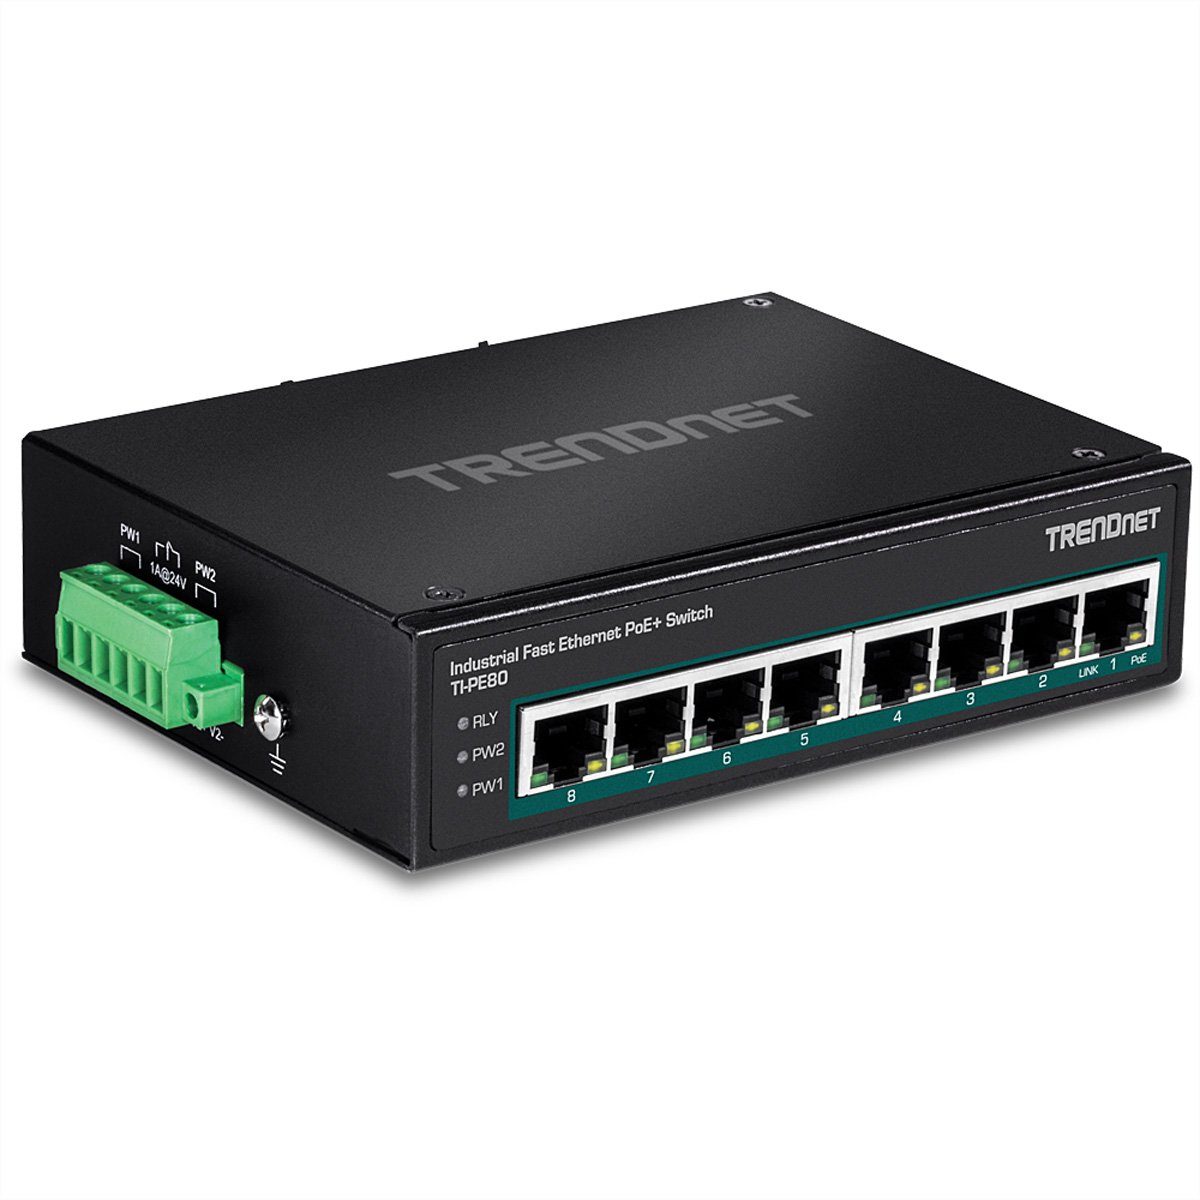 Trendnet TI-PE80 Industrial Fast Ethernet 8-Port PoE+ Netzwerk-Switch Switch DIN-Rail